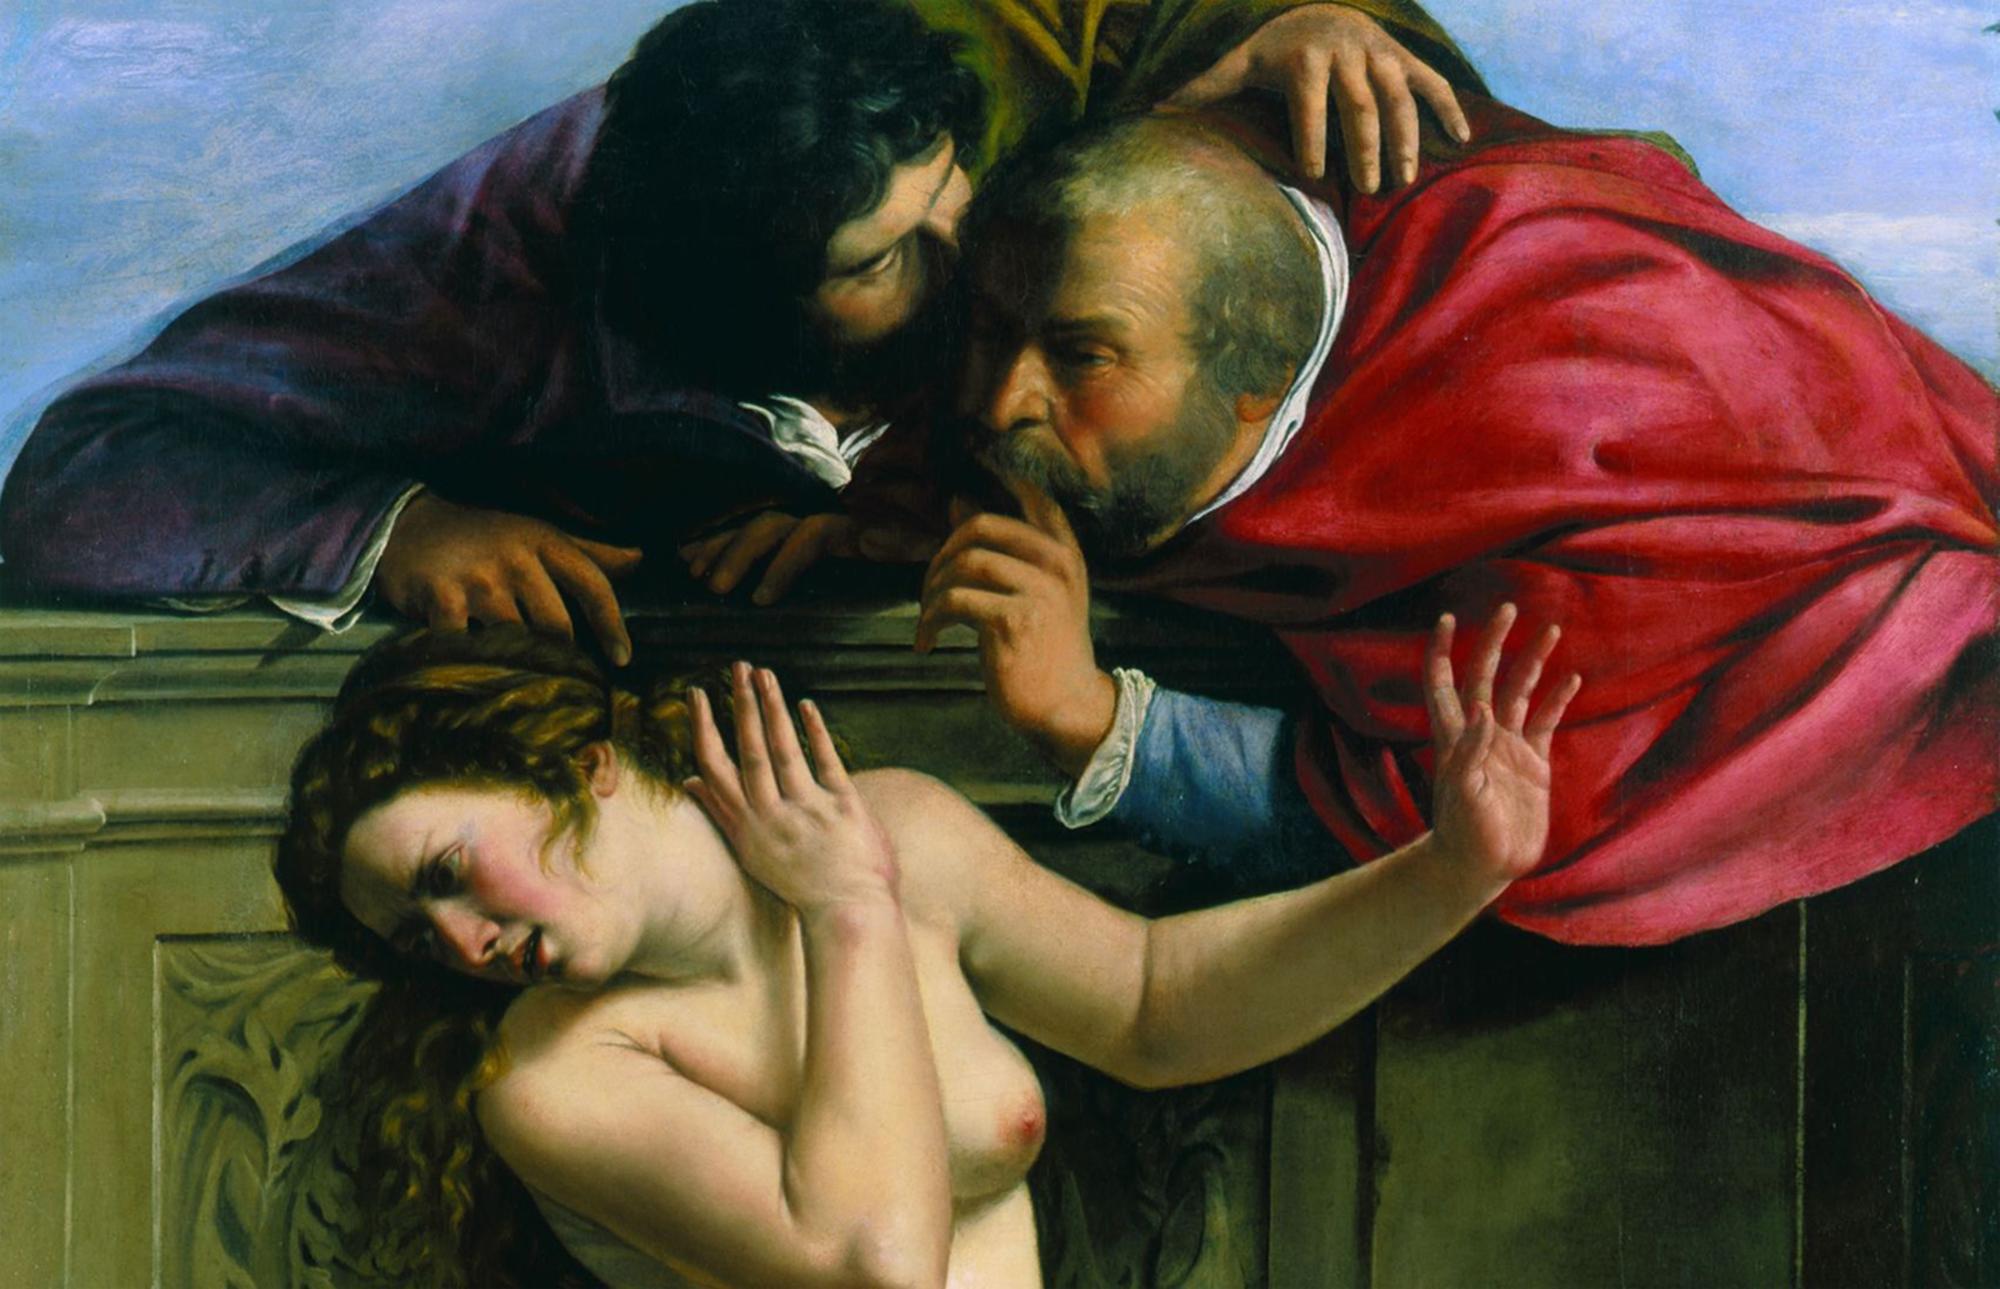 Agresiones sexuales en la pintura